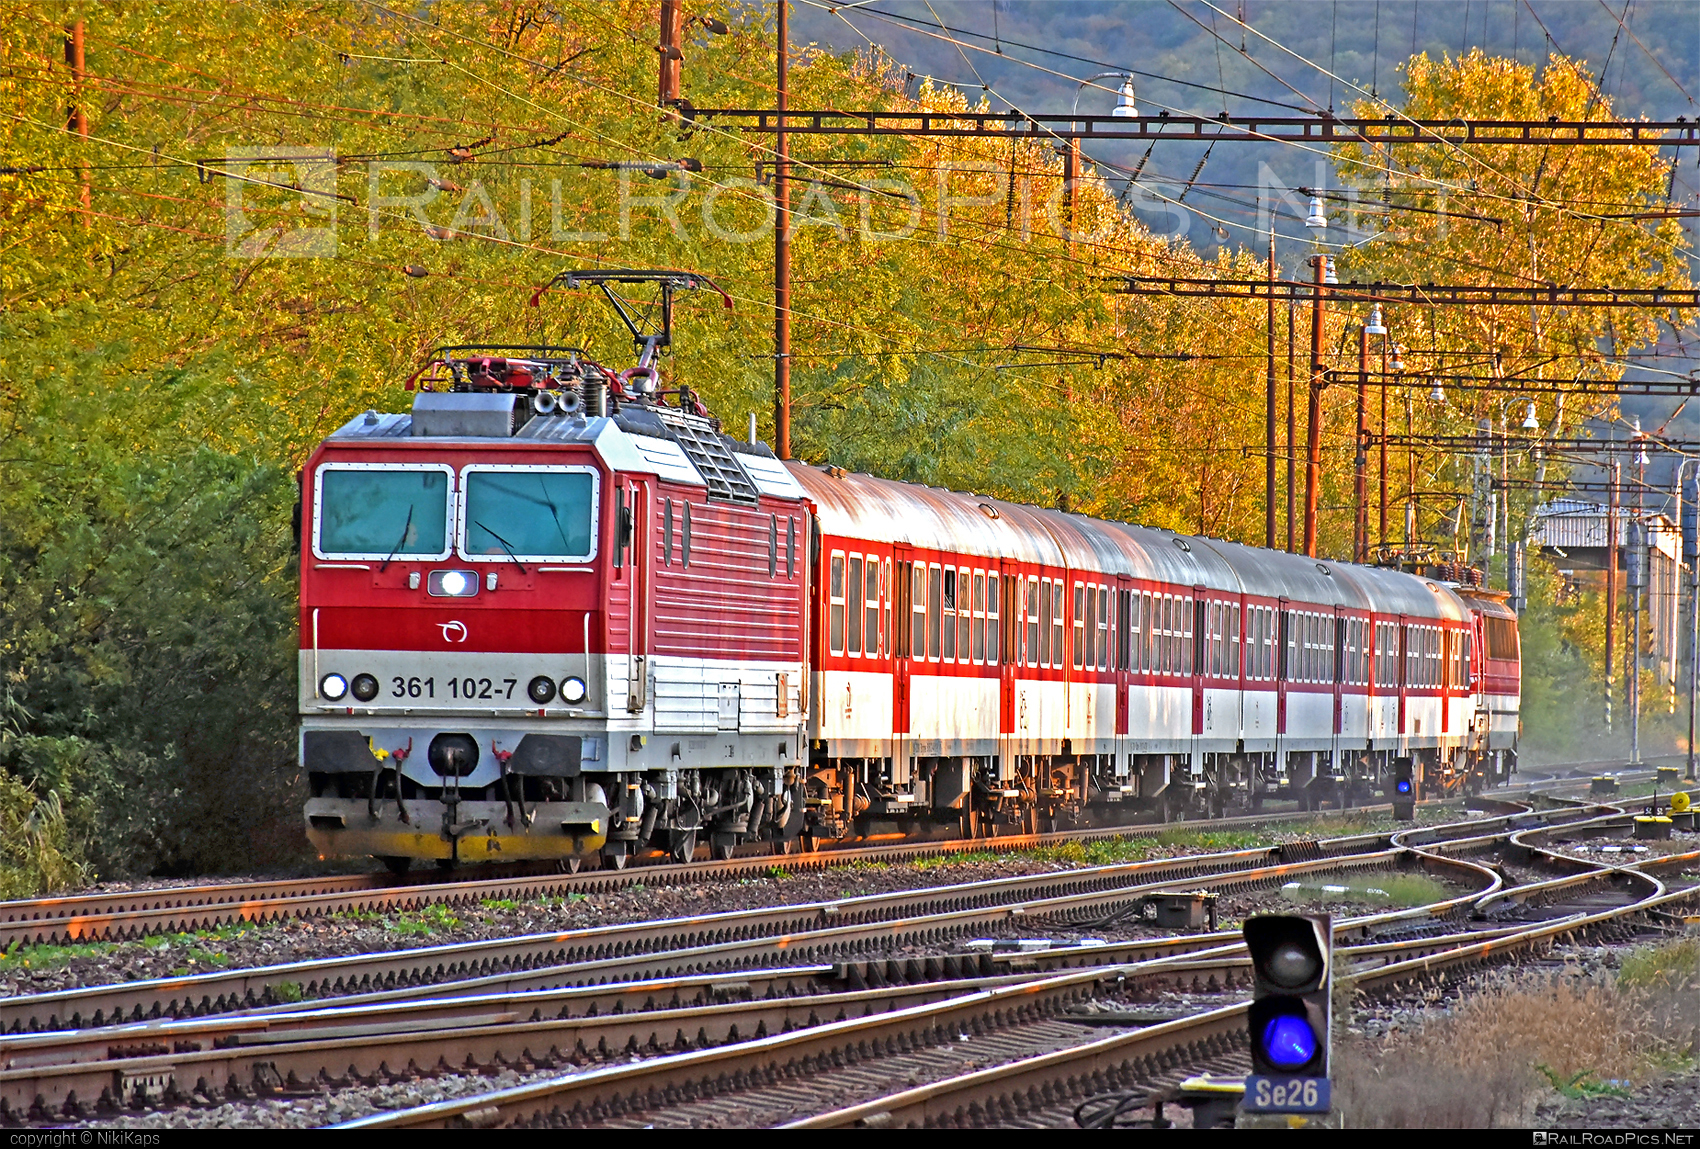 ŽOS Vrútky Class 361.1 - 361 102-7 operated by Železničná Spoločnost' Slovensko, a.s. #ZeleznicnaSpolocnostSlovensko #locomotive361 #locomotive3611 #zosvrutky #zssk